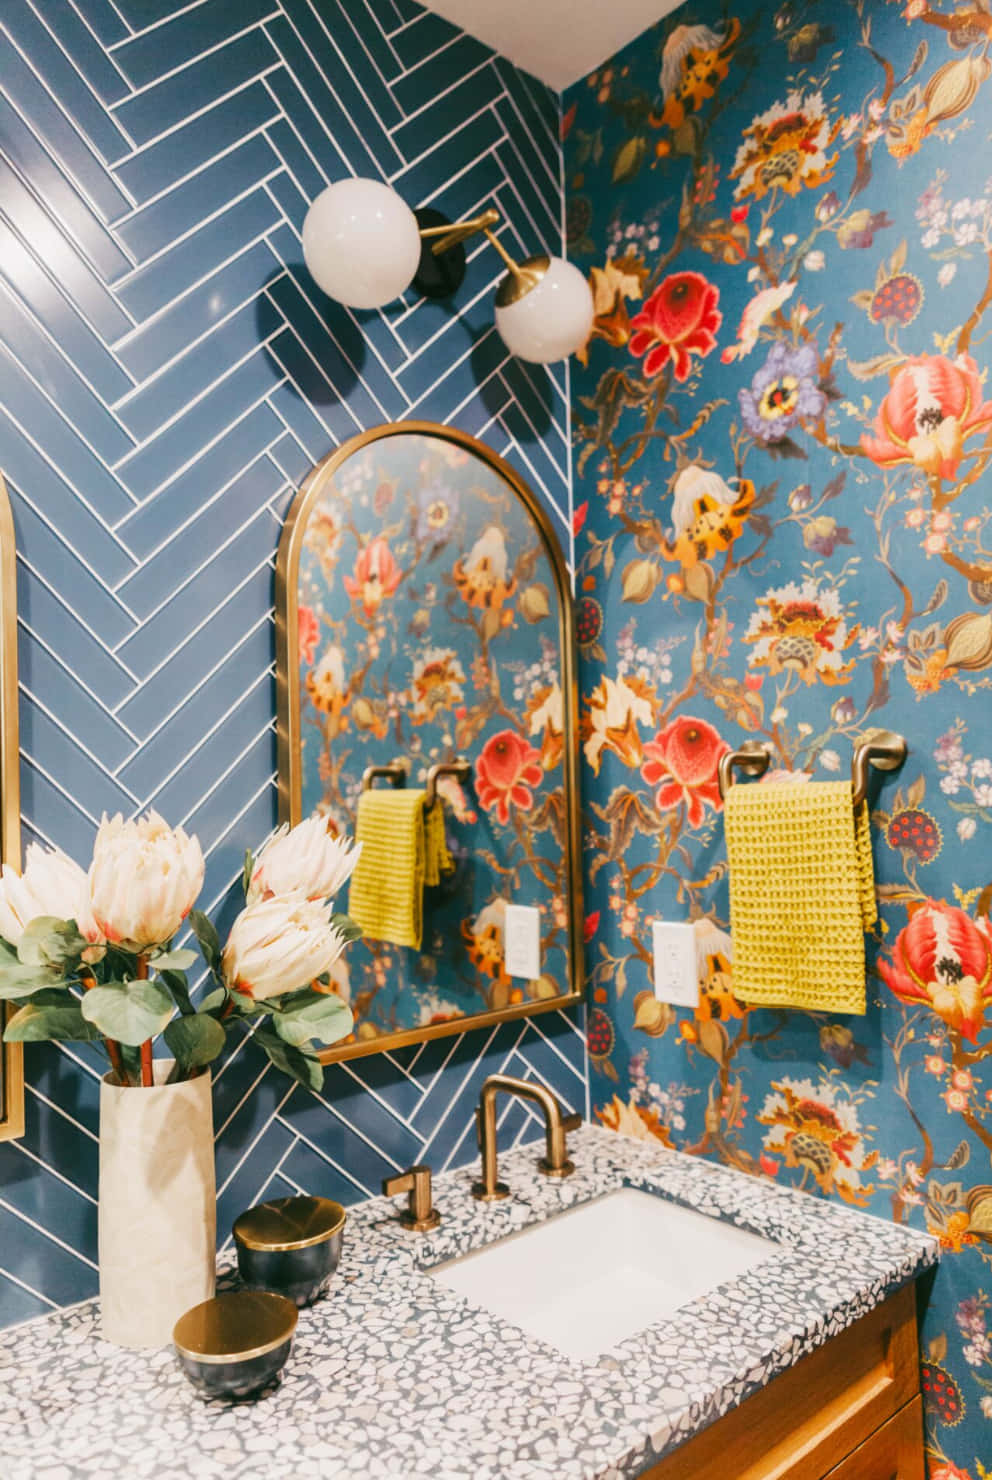 Schönesbild Von Orangenen Blumen Als Badezimmer-dekor